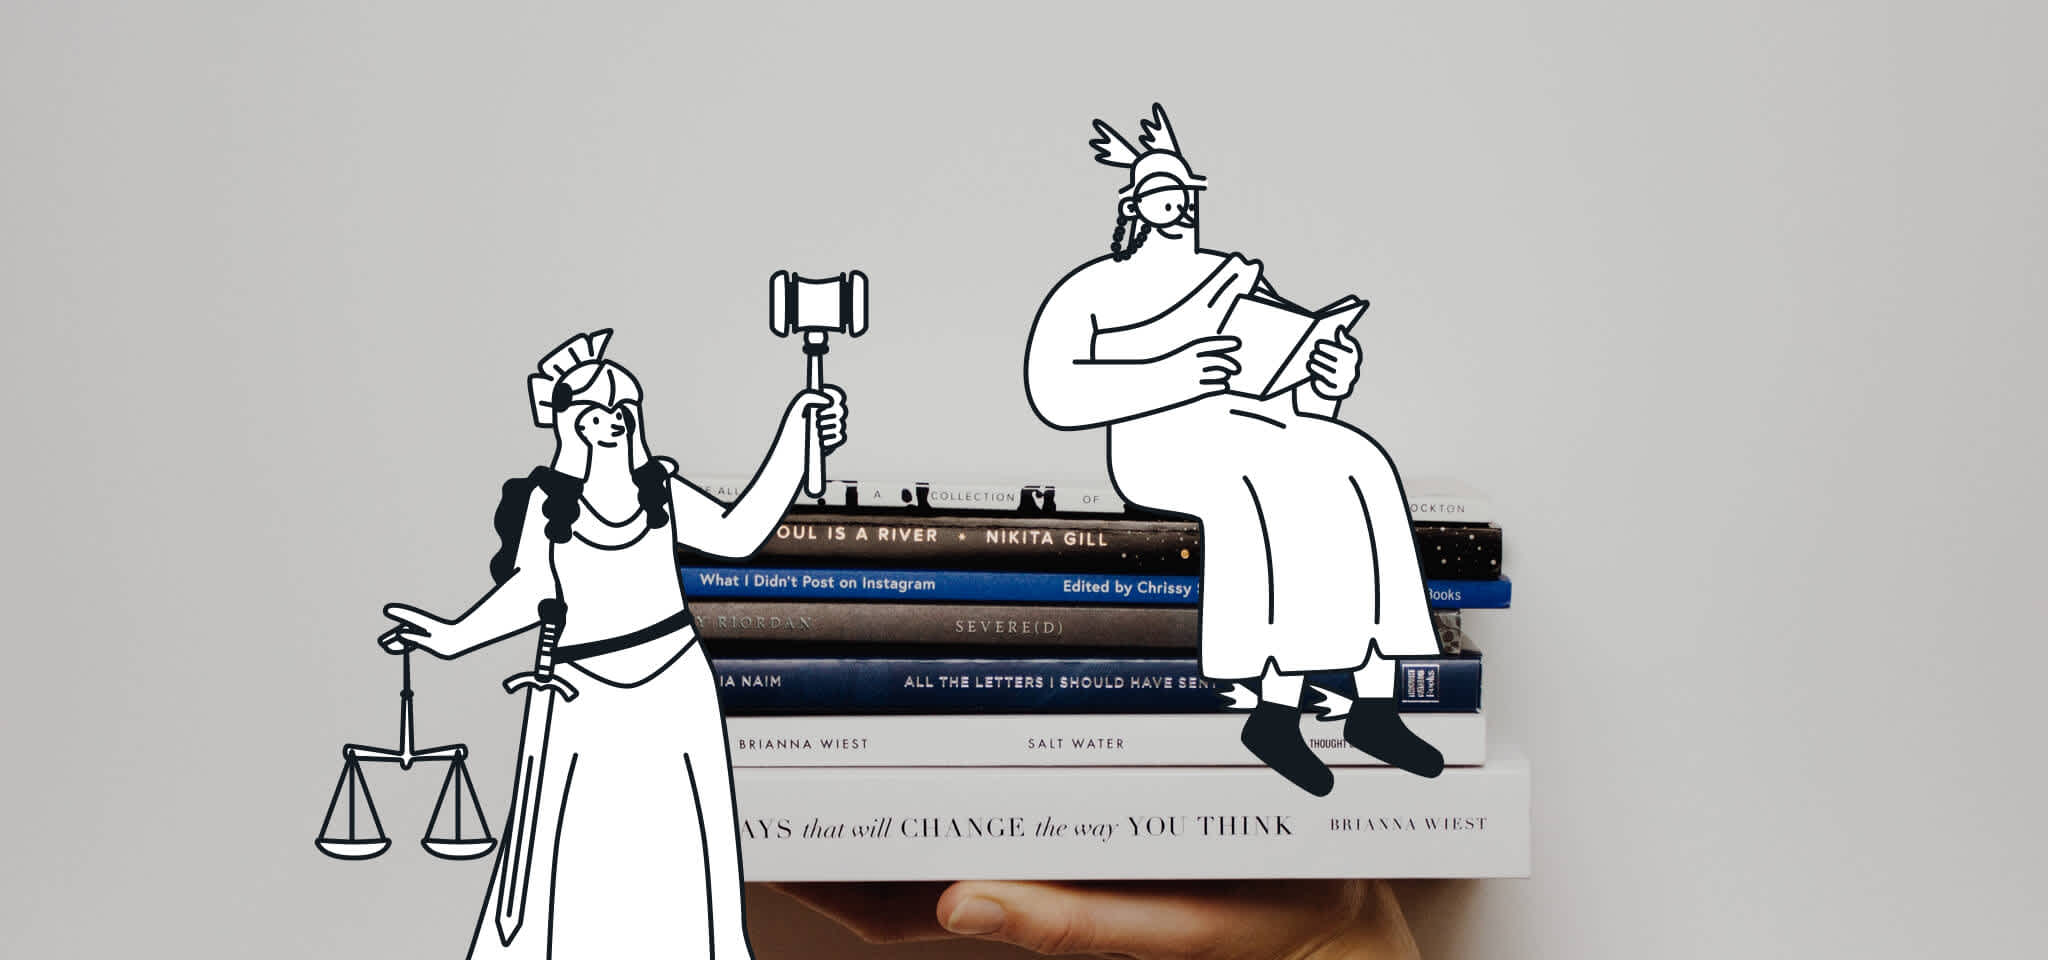 Hermes lee mientras una diosa imparte justicia sobre unos libros